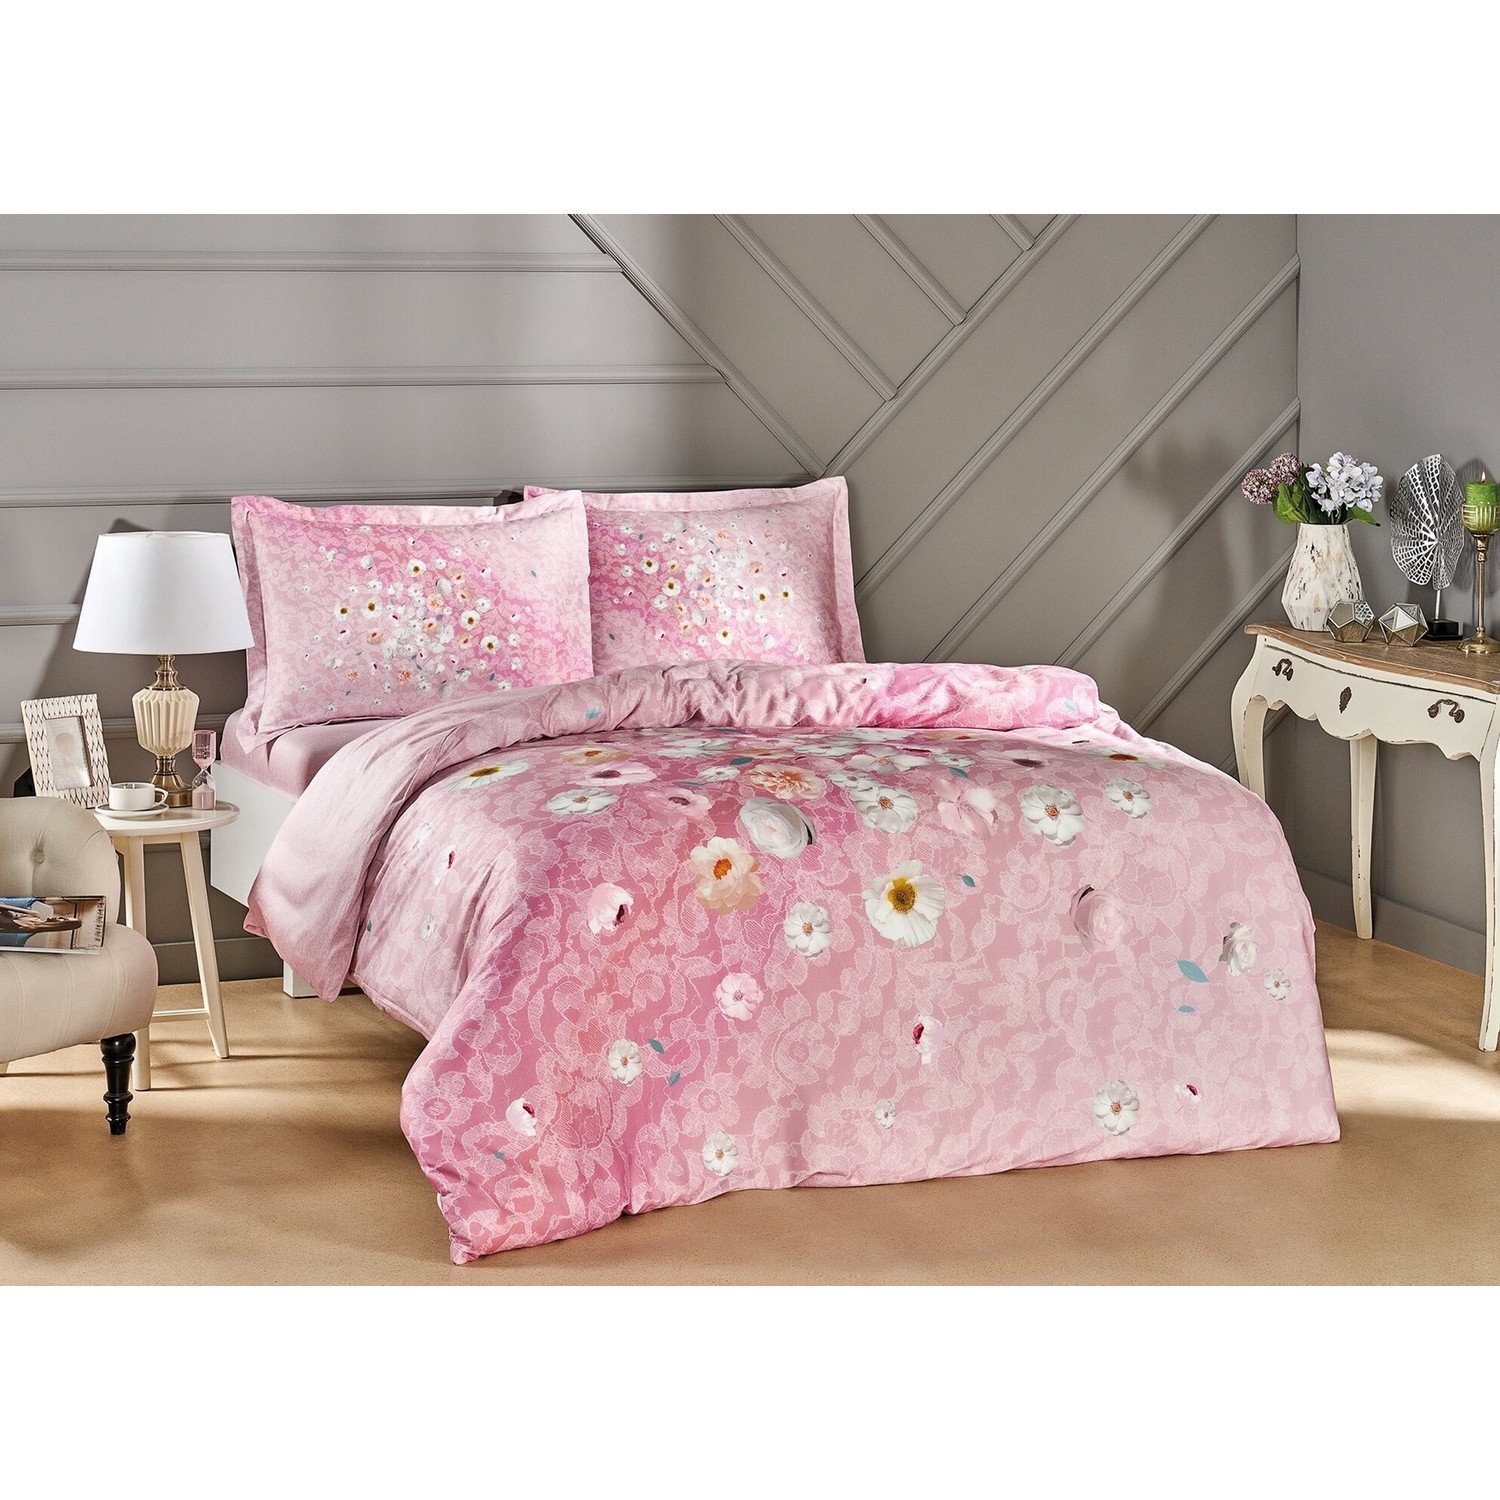 комплект постельного белья из хлопкового атласа elite sandero цвета хаки Tac - Комплект постельного белья из хлопкового атласа Serlina розового цвета